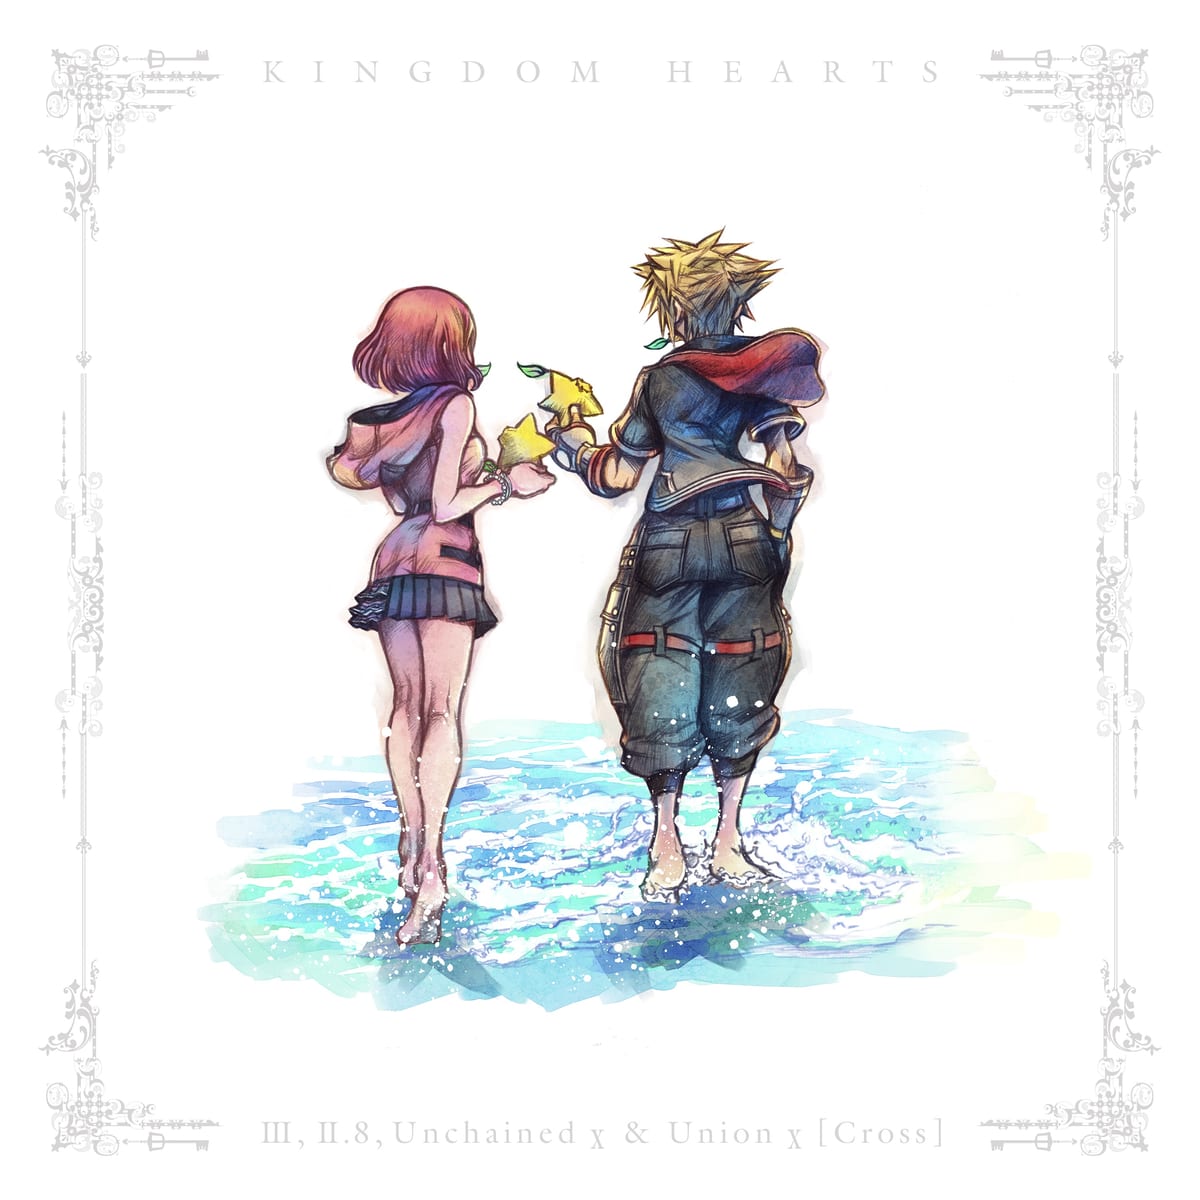 配信版：『KINGDOM HEARTS - III, II.8, Unchained χ & Union χ [Cross] - Original Soundtrack』